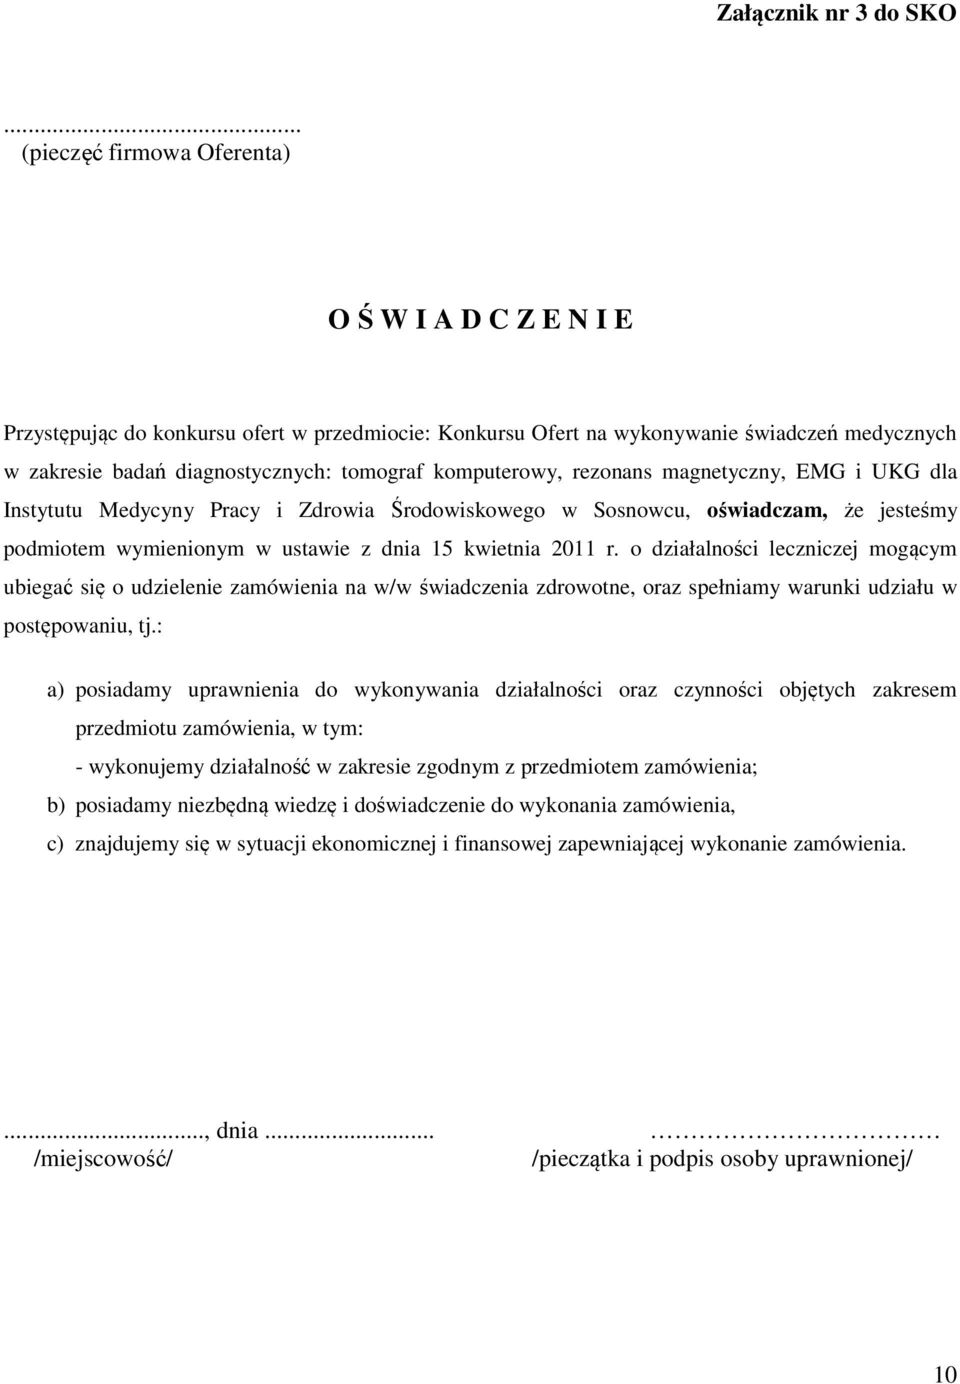 komputerowy, rezonans magnetyczny, EMG i UKG dla Instytutu Medycyny Pracy i Zdrowia Środowiskowego w Sosnowcu, oświadczam, że jesteśmy podmiotem wymienionym w ustawie z dnia 15 kwietnia 2011 r.